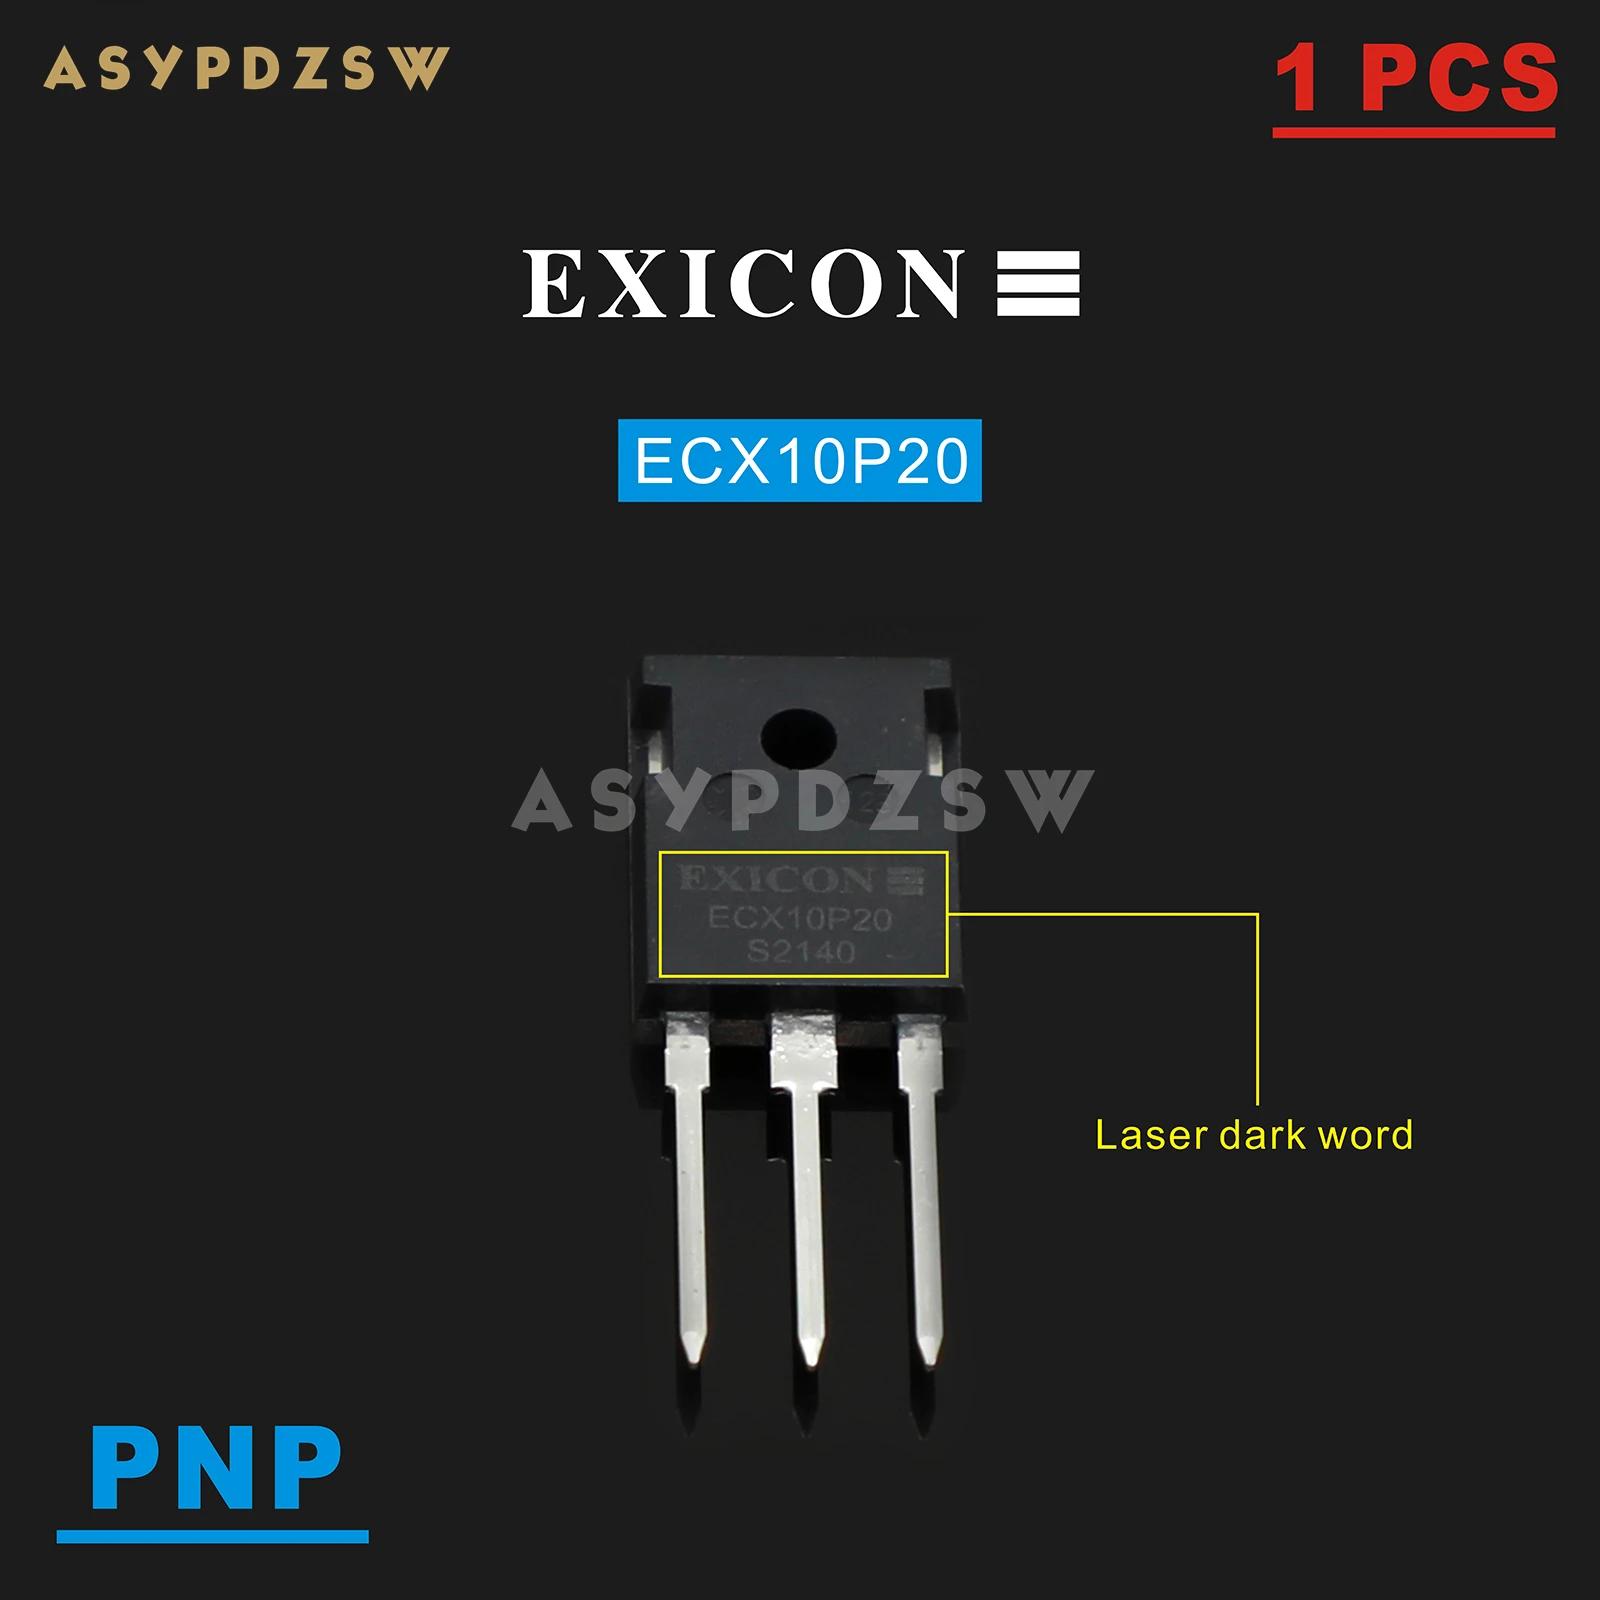   Ʈ  EXICON  Ʃ, PCF F7 , ECX10N20/ECX10P20, 1 